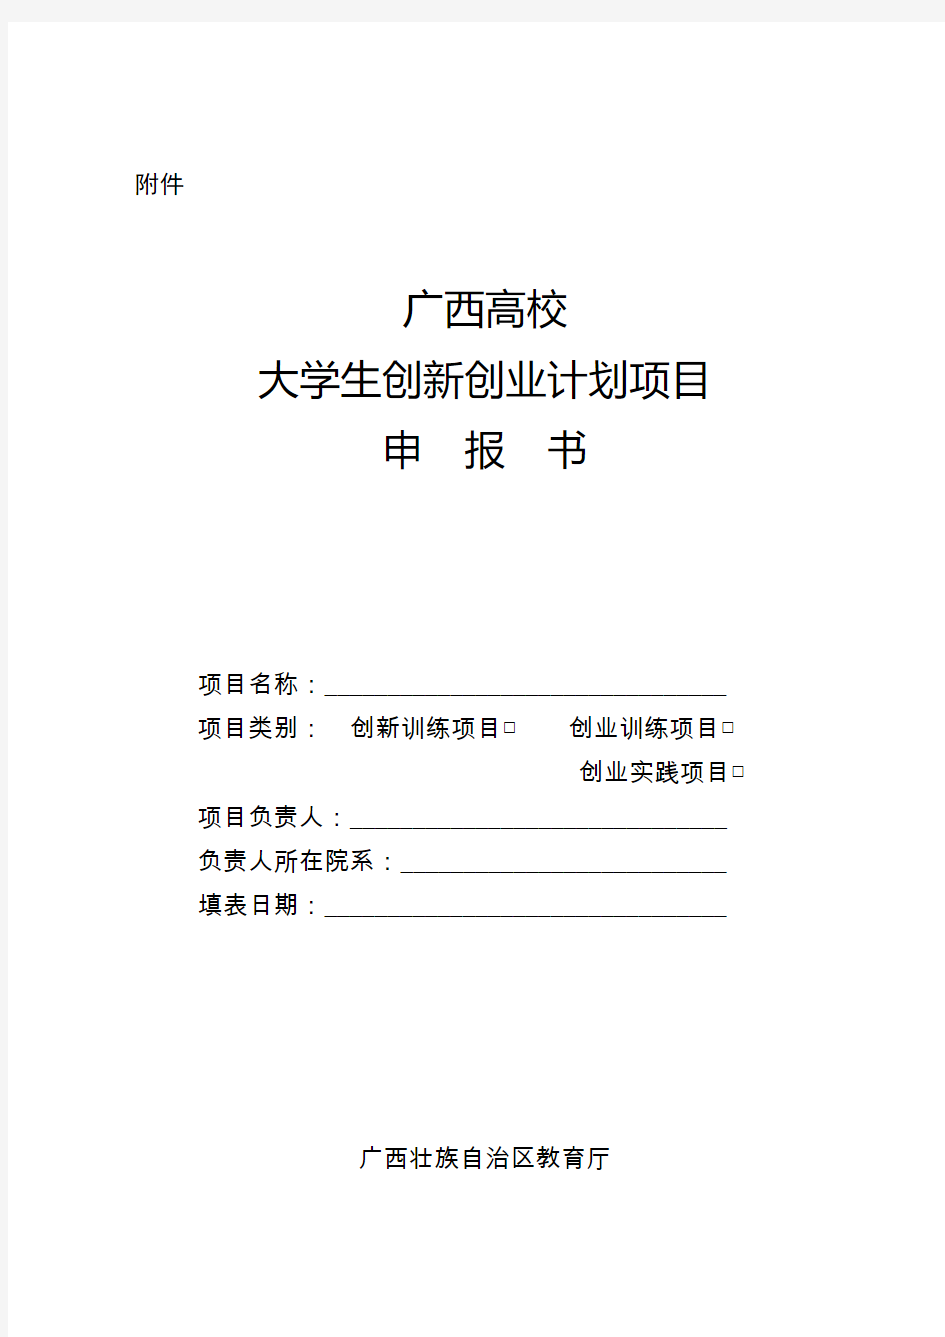 广西高校大学生创新创业训练计划项目申报书